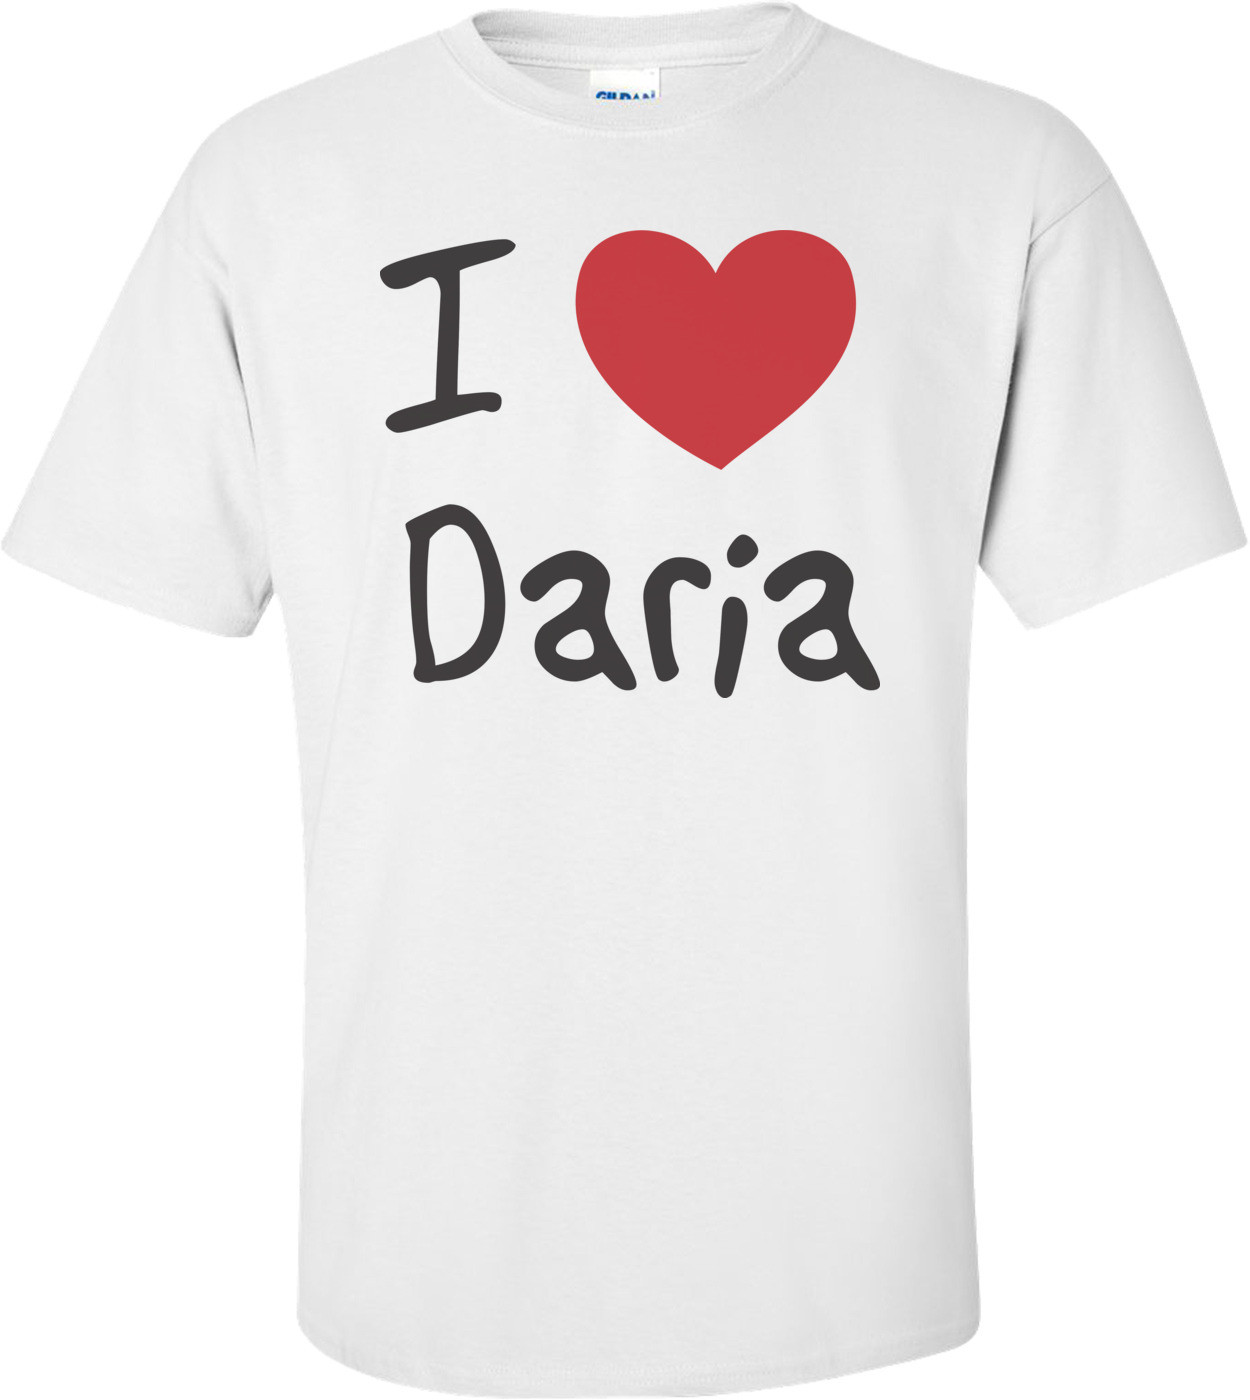 I Love Daria